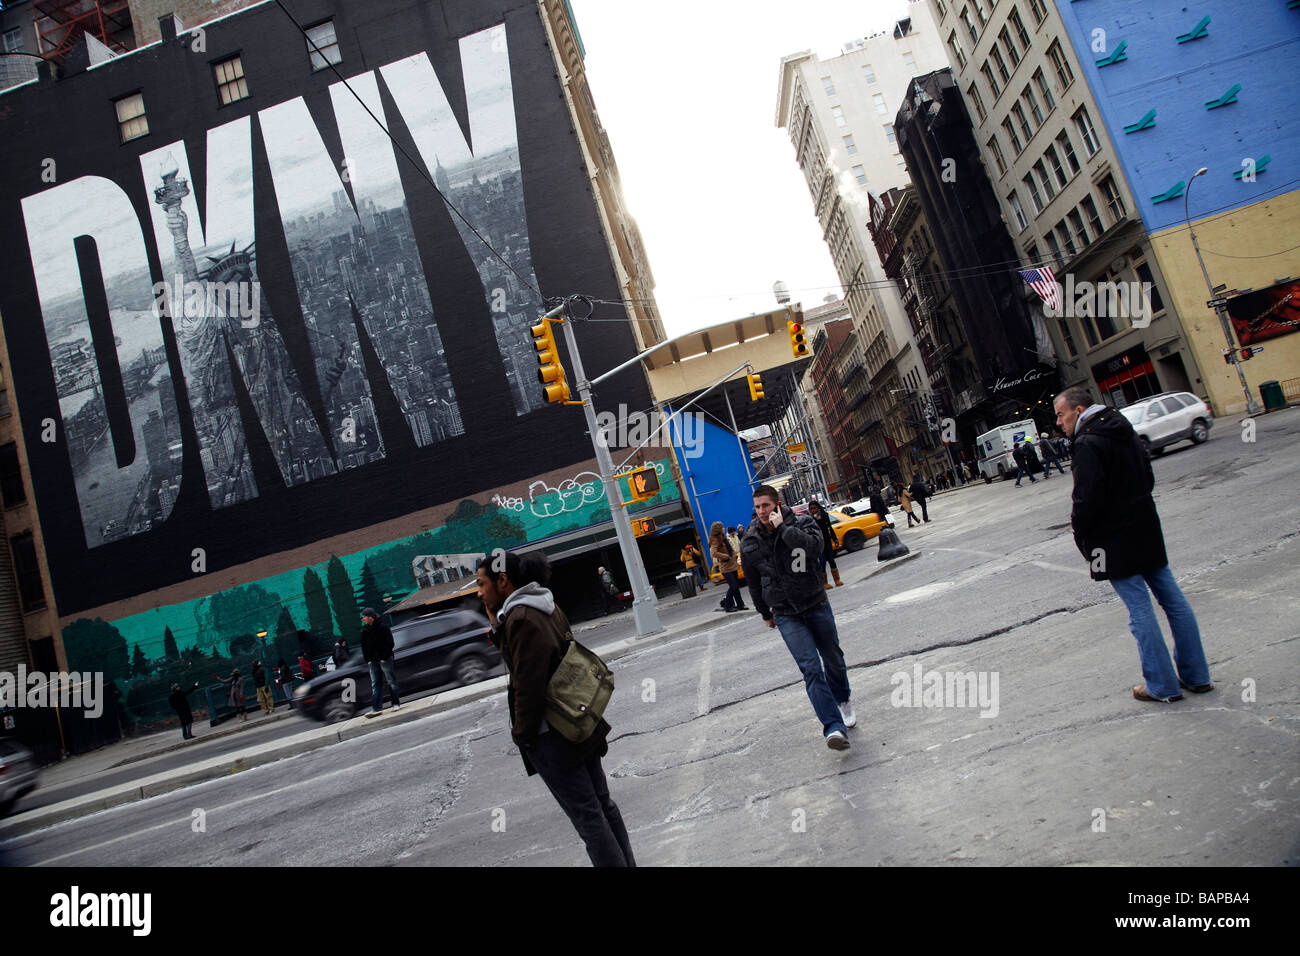 Scène de rue, DKNY billboard, New York Banque D'Images